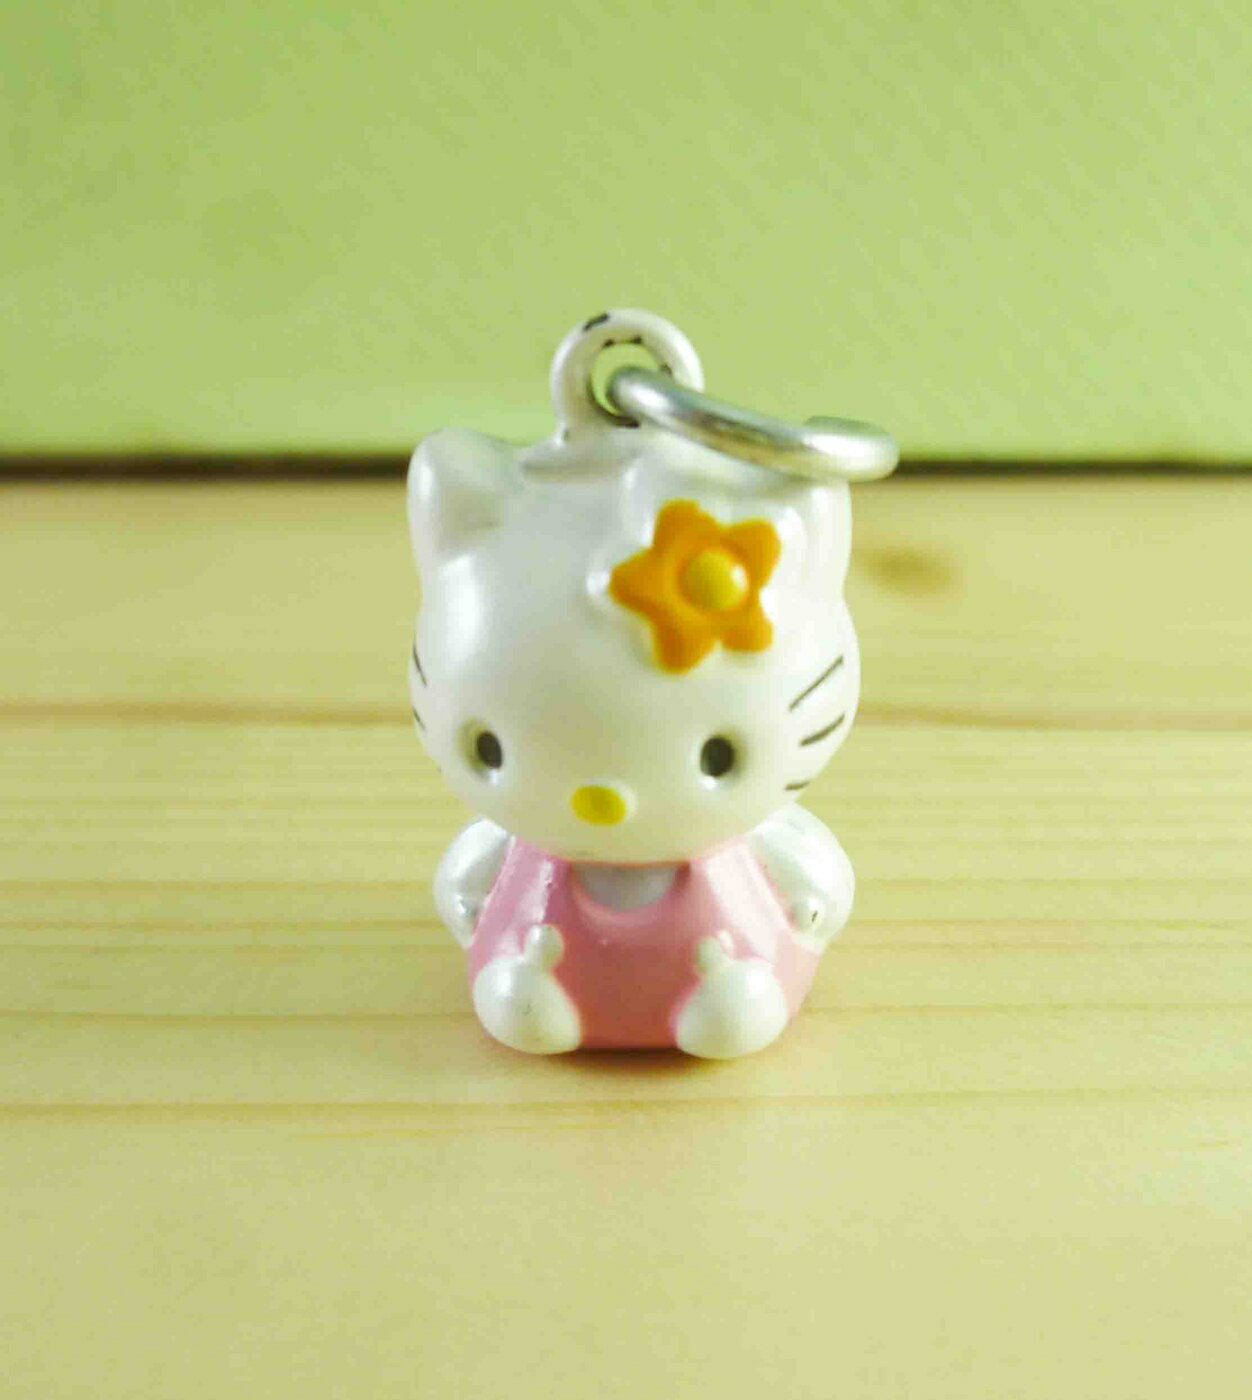 【震撼精品百貨】Hello Kitty 凱蒂貓 KITTY飾品吊飾-粉坐 震撼日式精品百貨